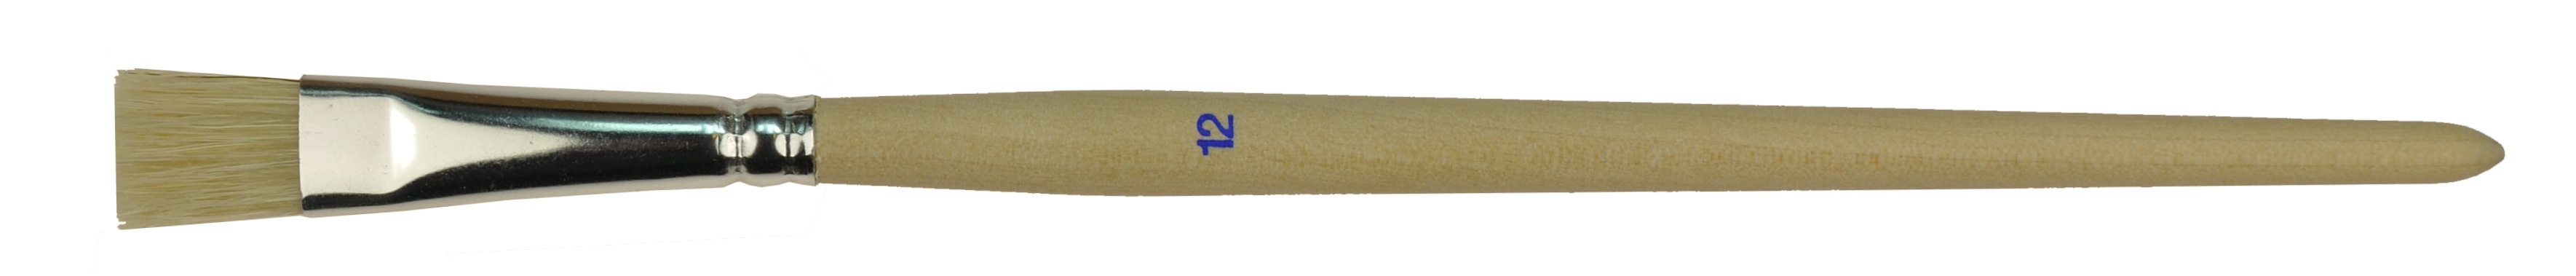 Schulmal- und Borstenpinsel flach stumpf weiße Borsten, kurze rohe Holzstiel, 12 Größen wählbar